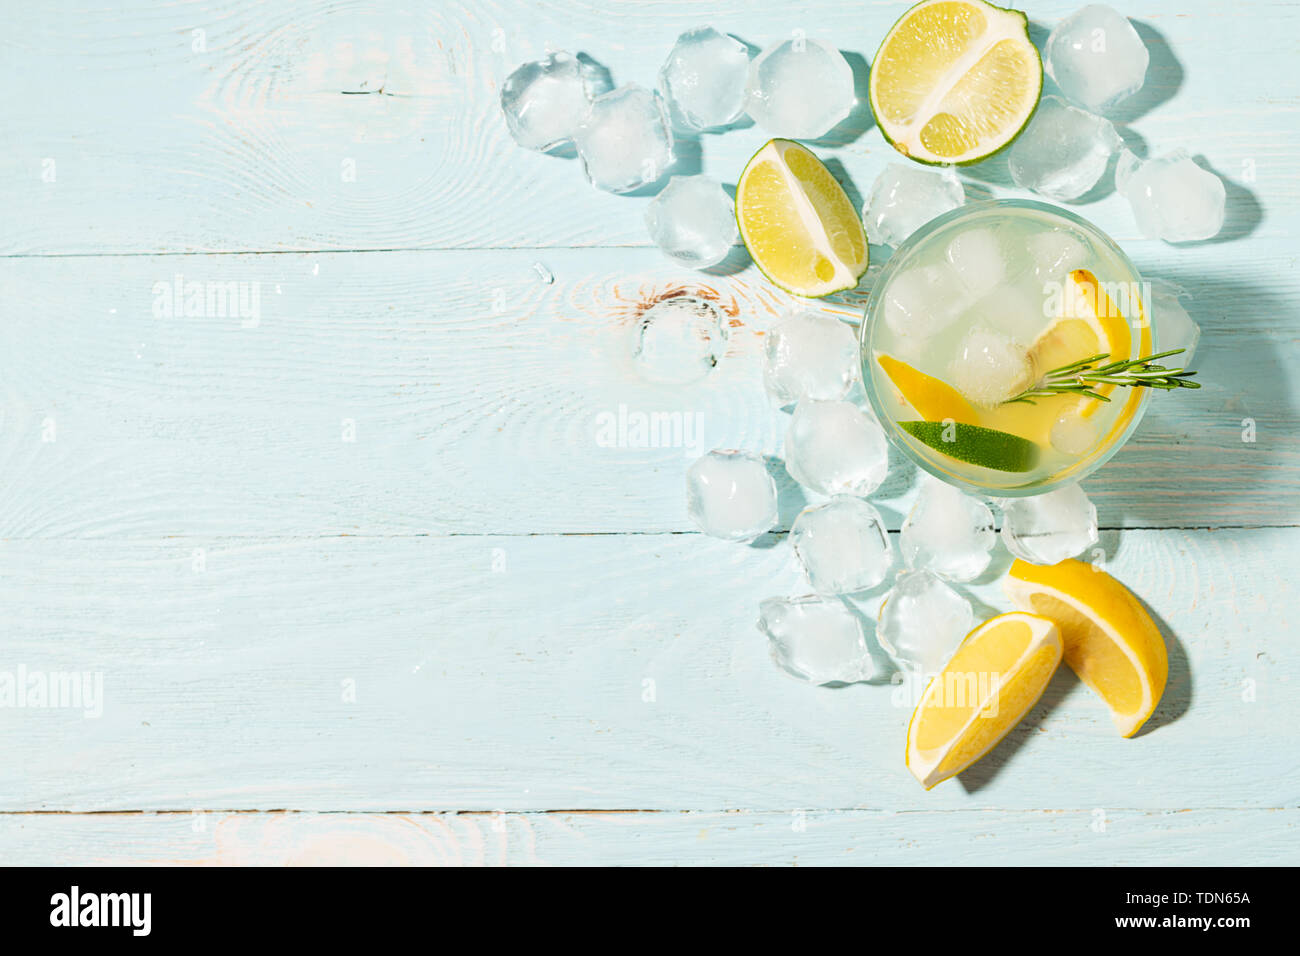 Un verre de limonade citron et lime en verres transparents fond bleu plein soleil. Cocktail d'été ou mojito. Banque D'Images